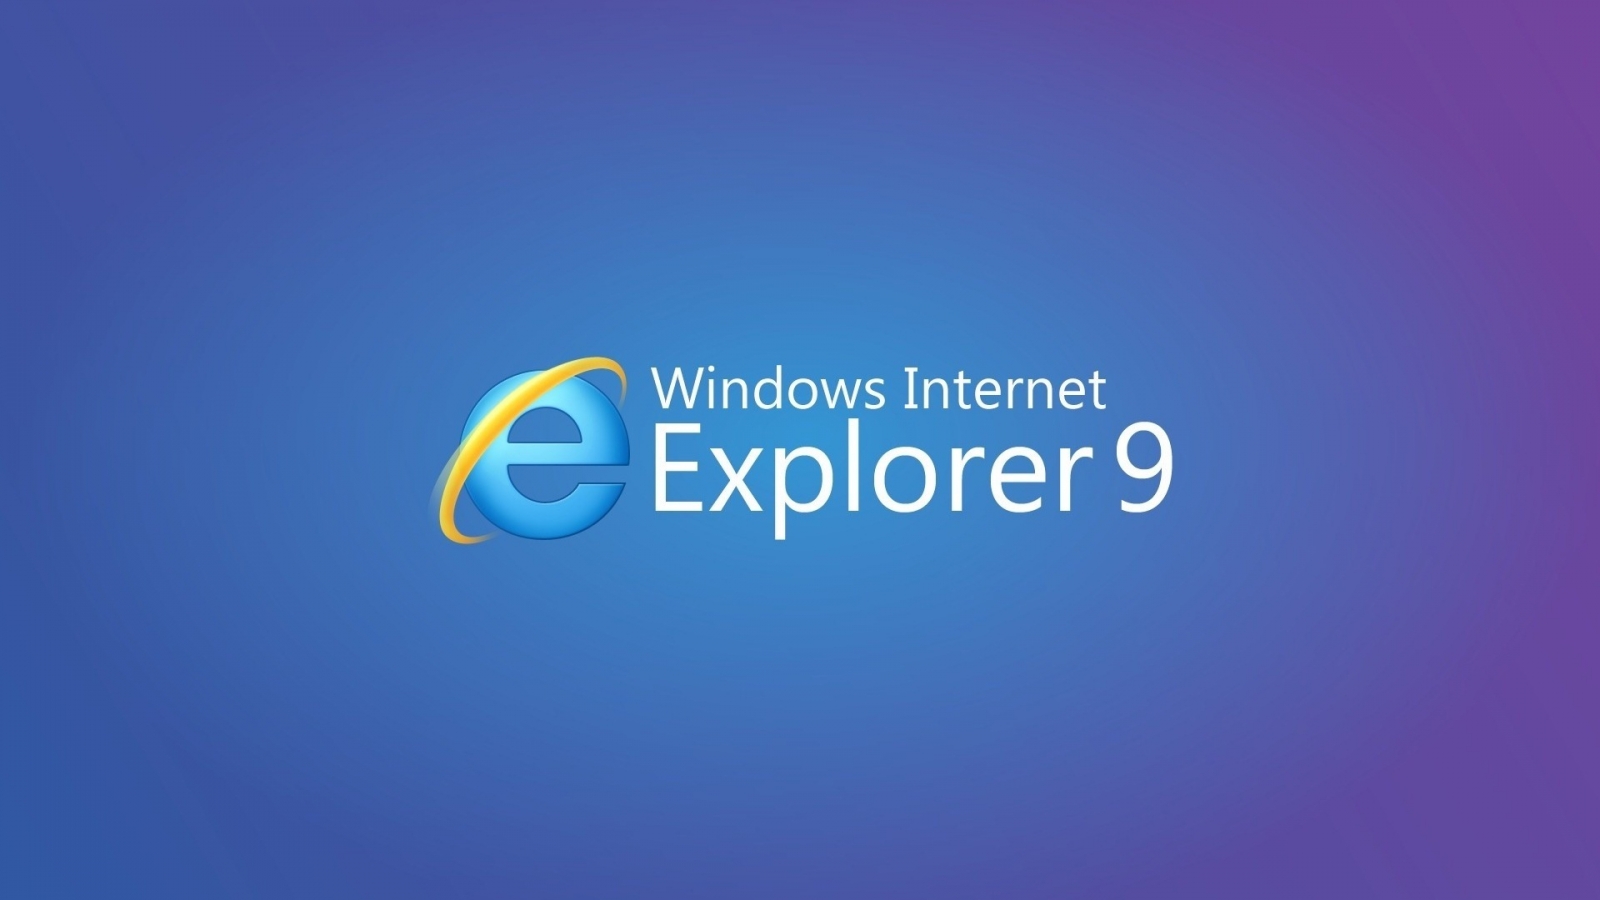 Internet Explorer 9 for 1600 x 900 HDTV resolution